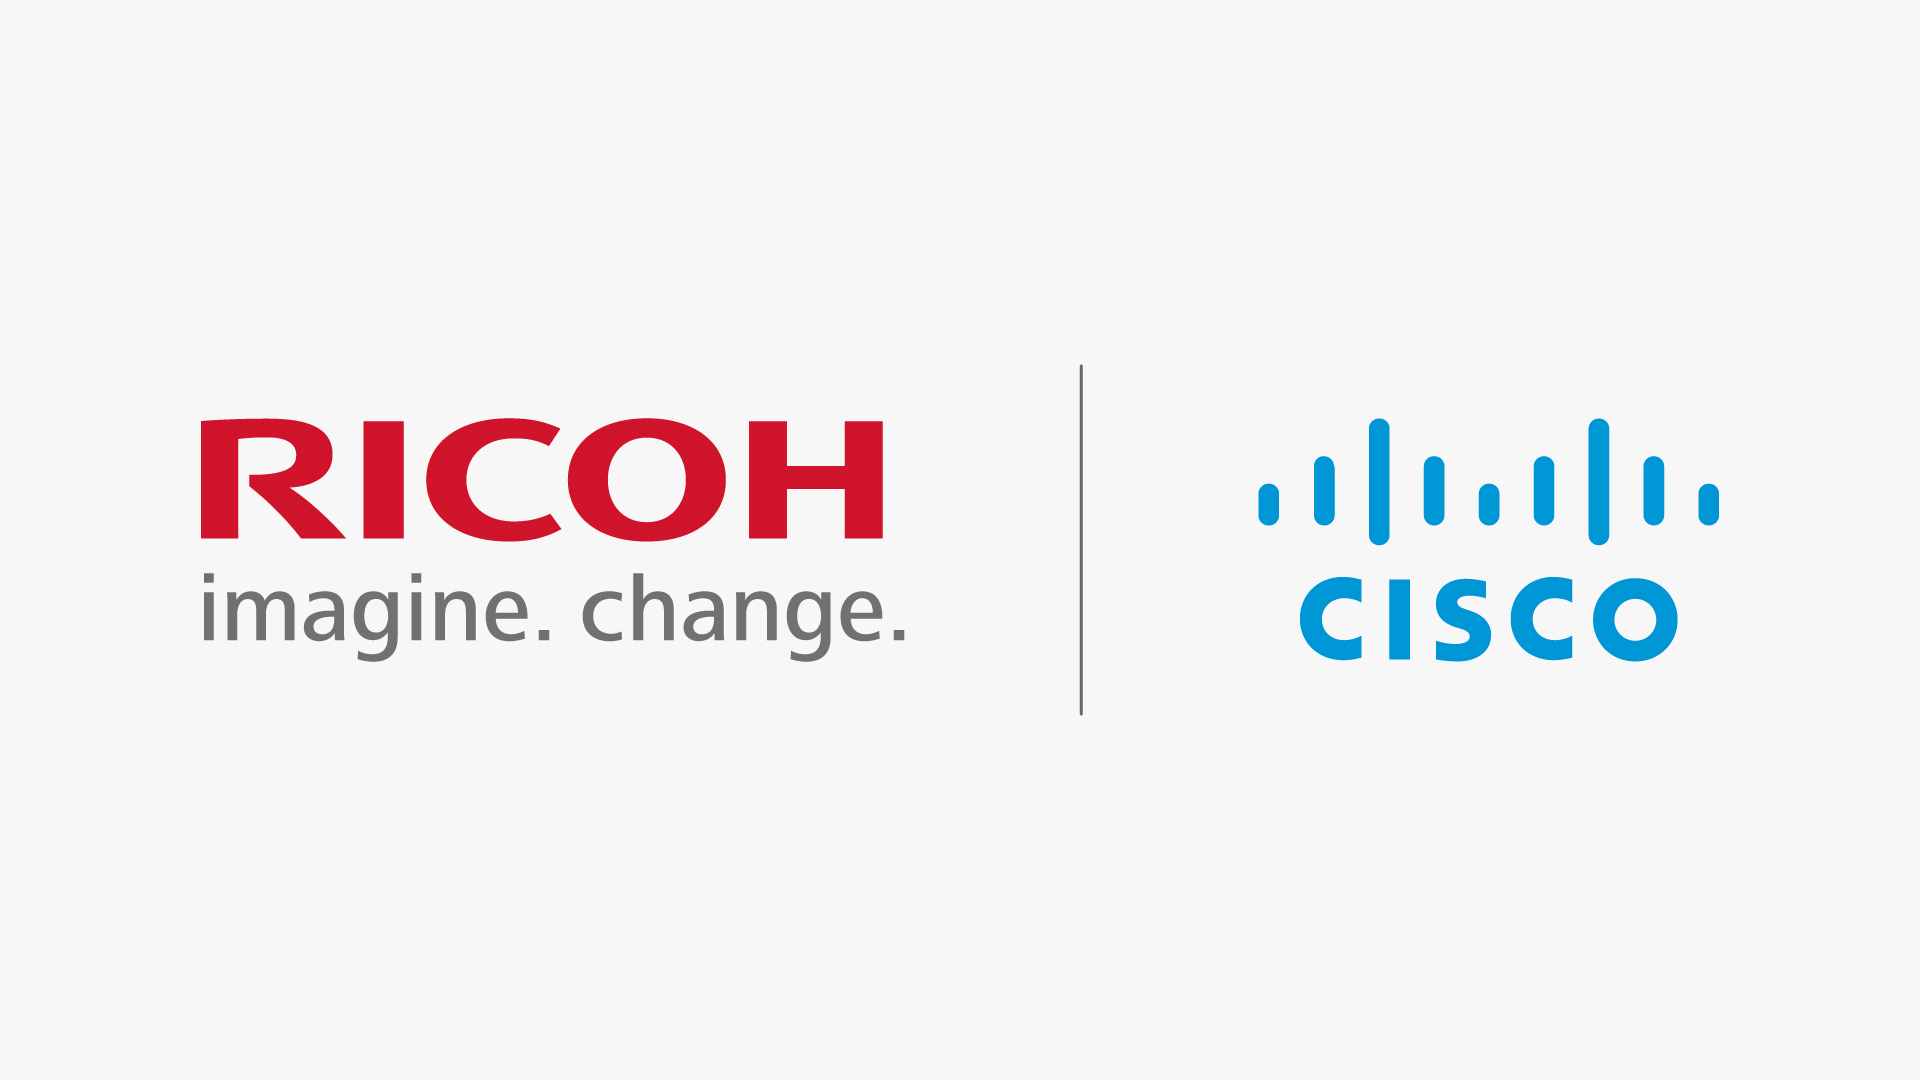 Ricoh and Ciscon logo